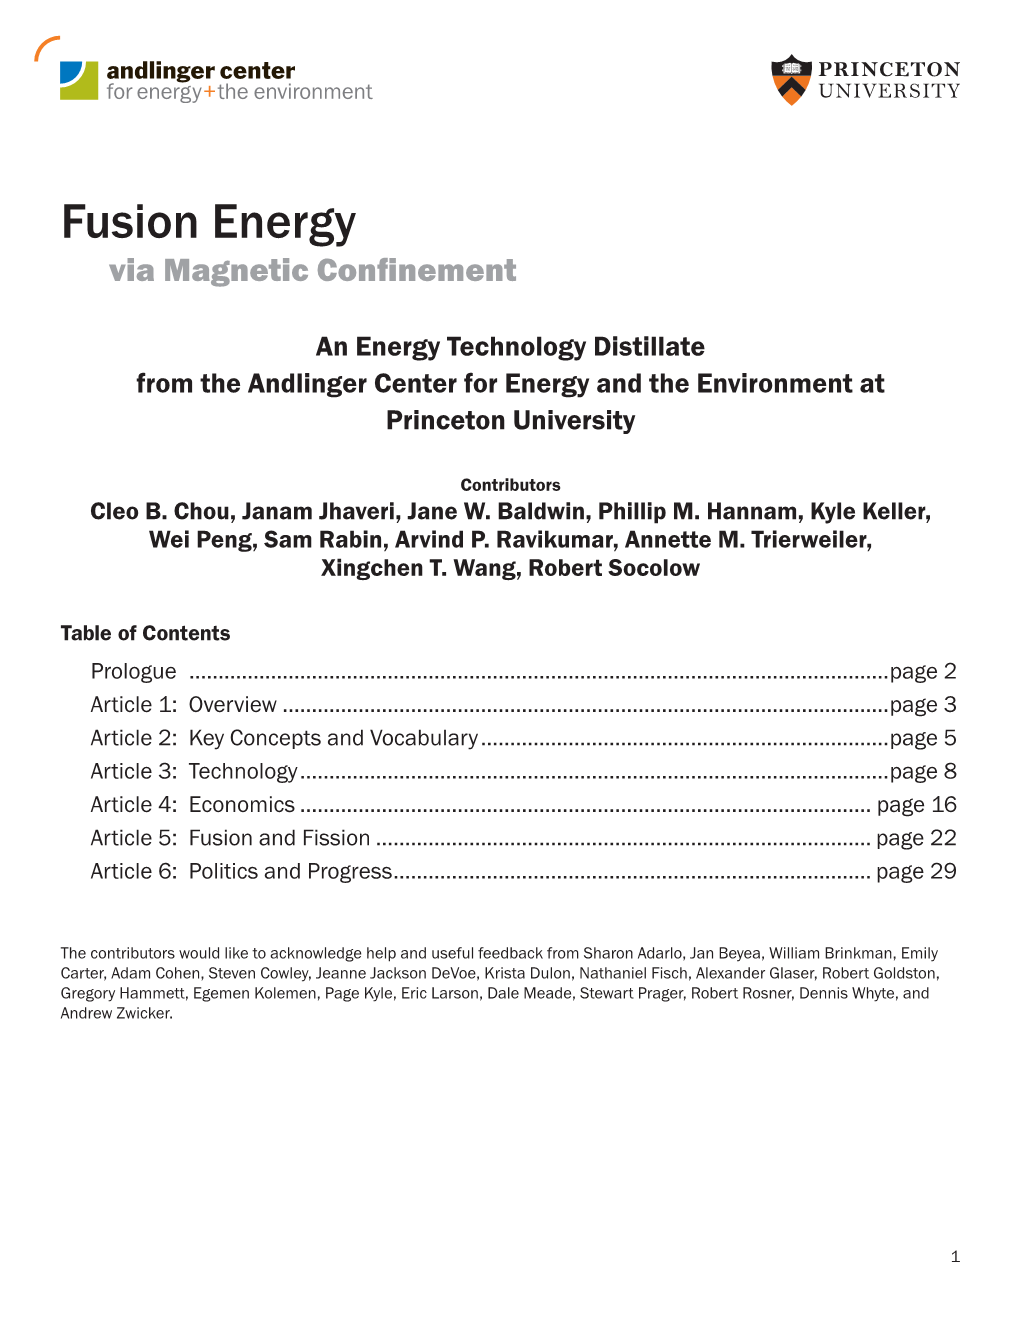 Fusion Energy Via Magnetic Confinement